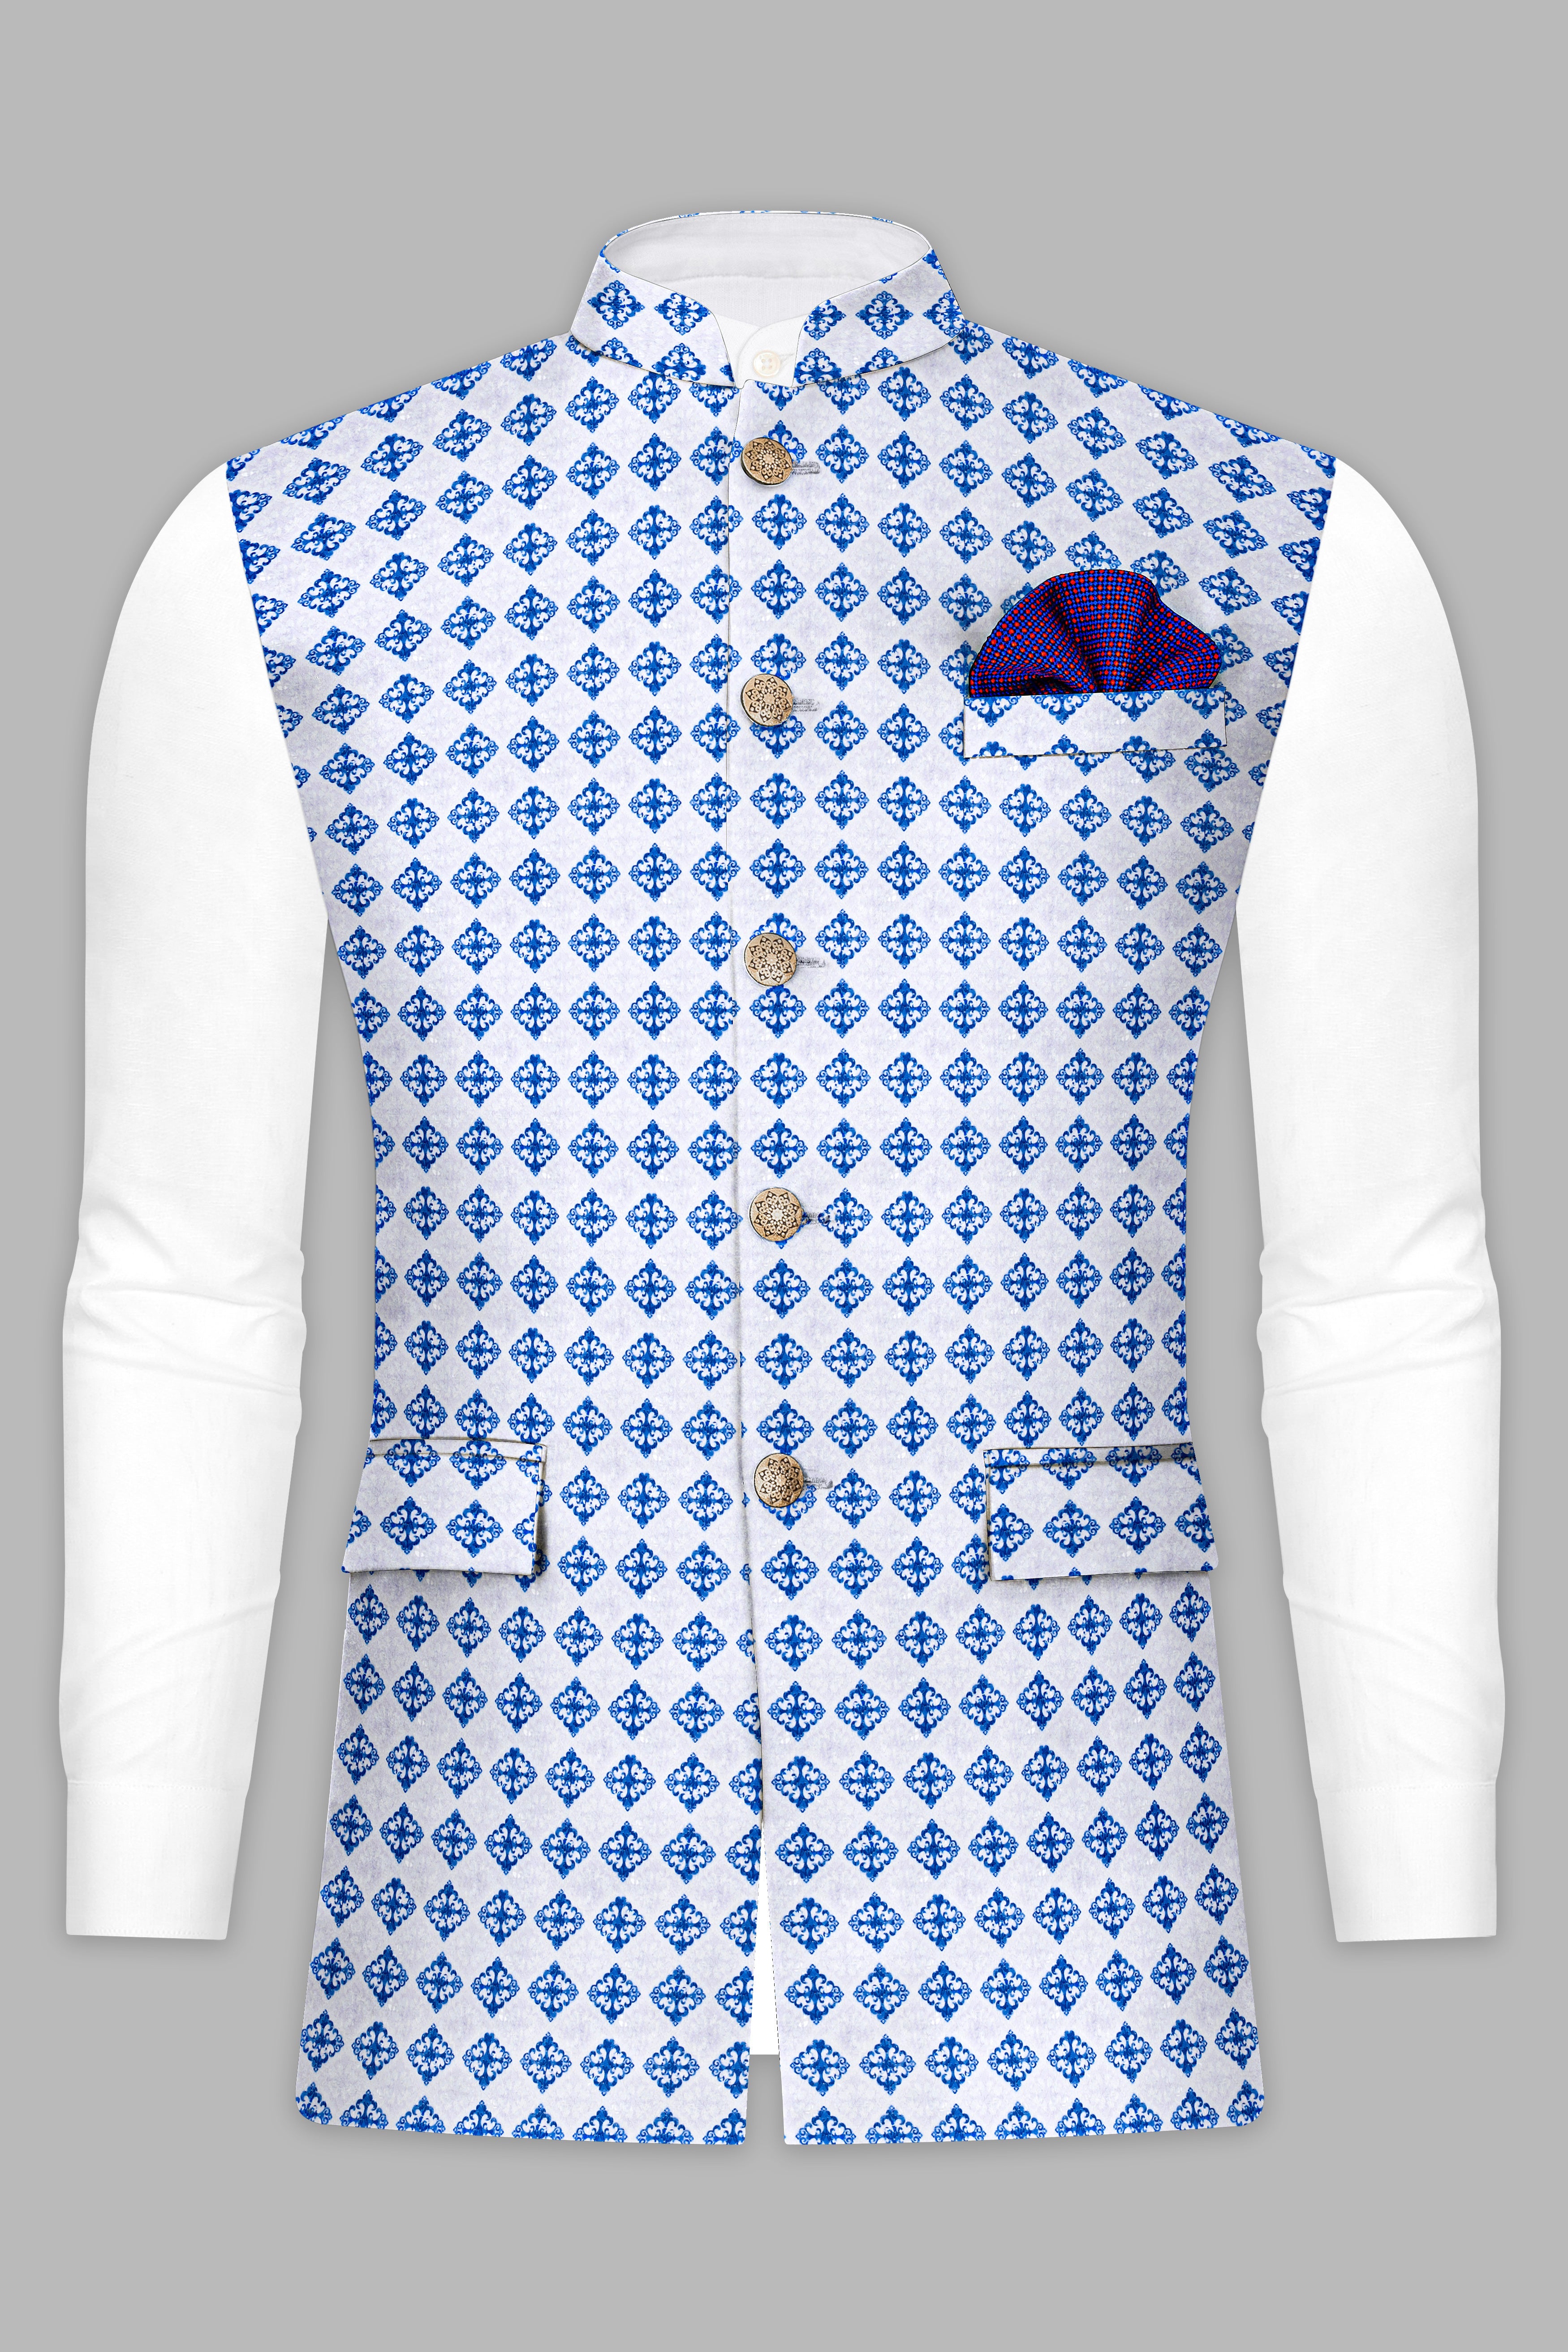 Bluish Blue And Bright White Trellis Designer Embroidered Nehru Jacket